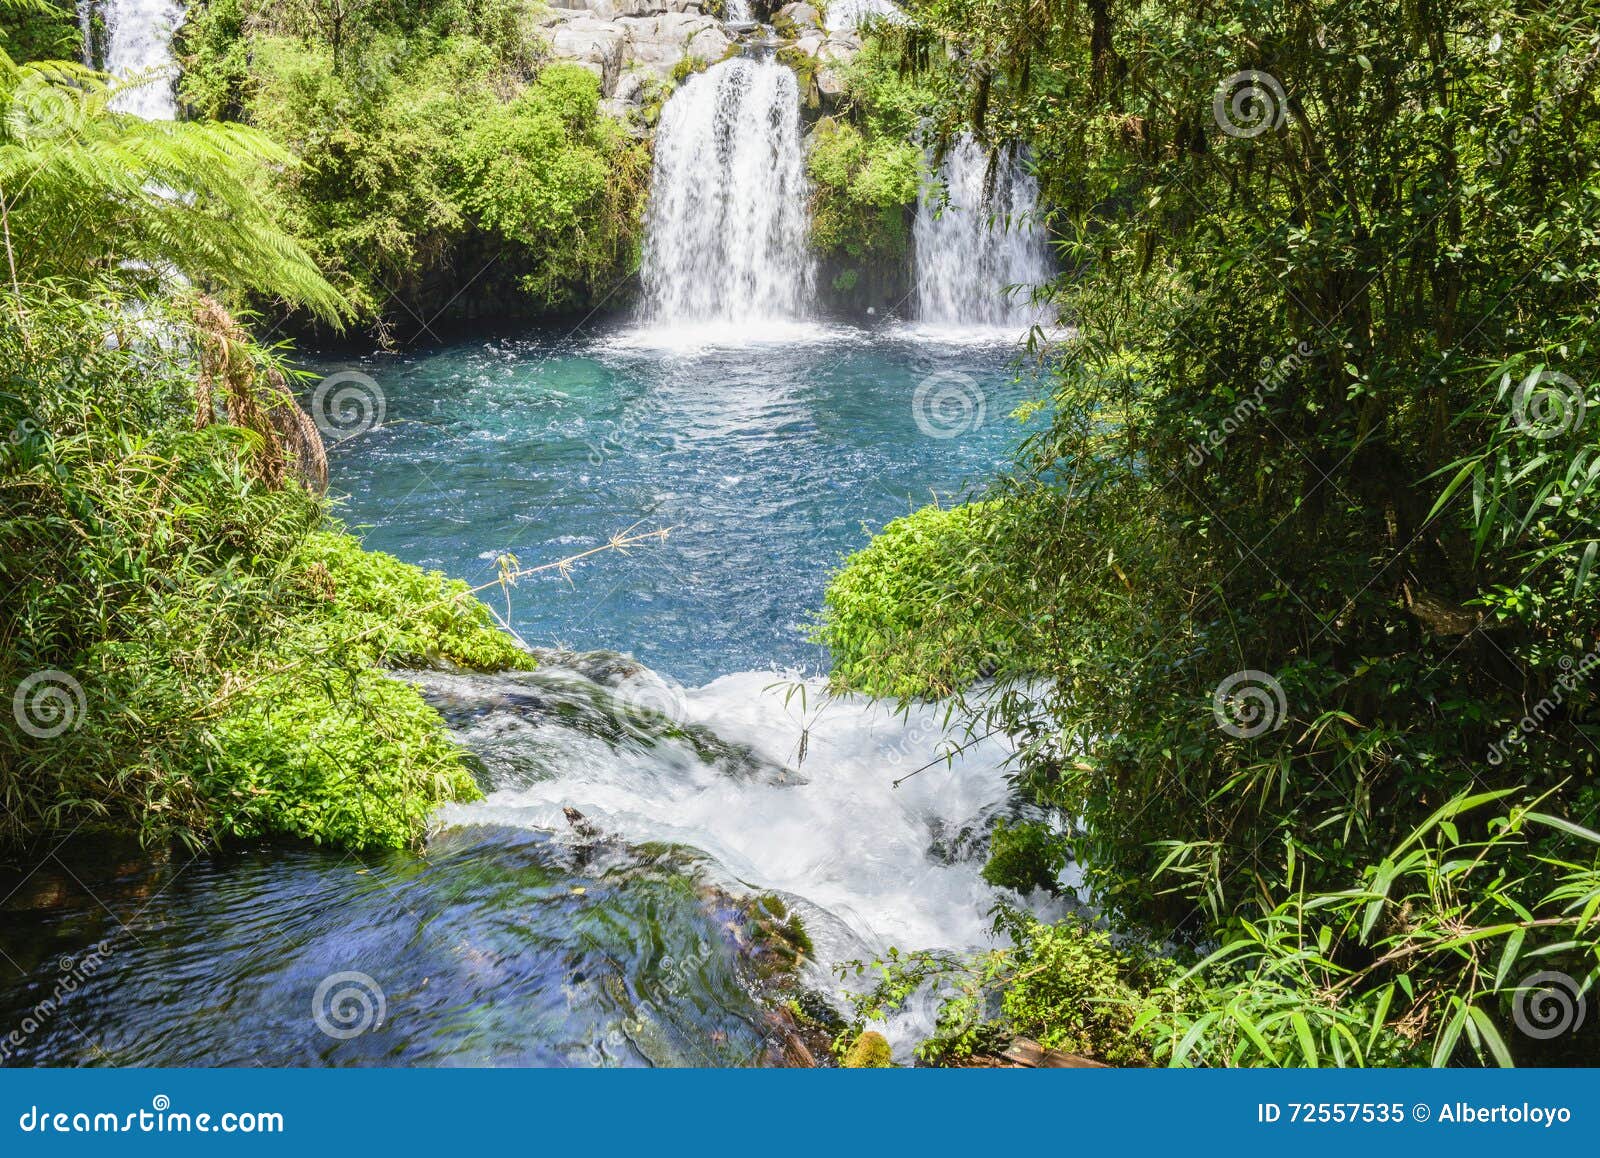 waterfalls of ojos del caburgua, chile